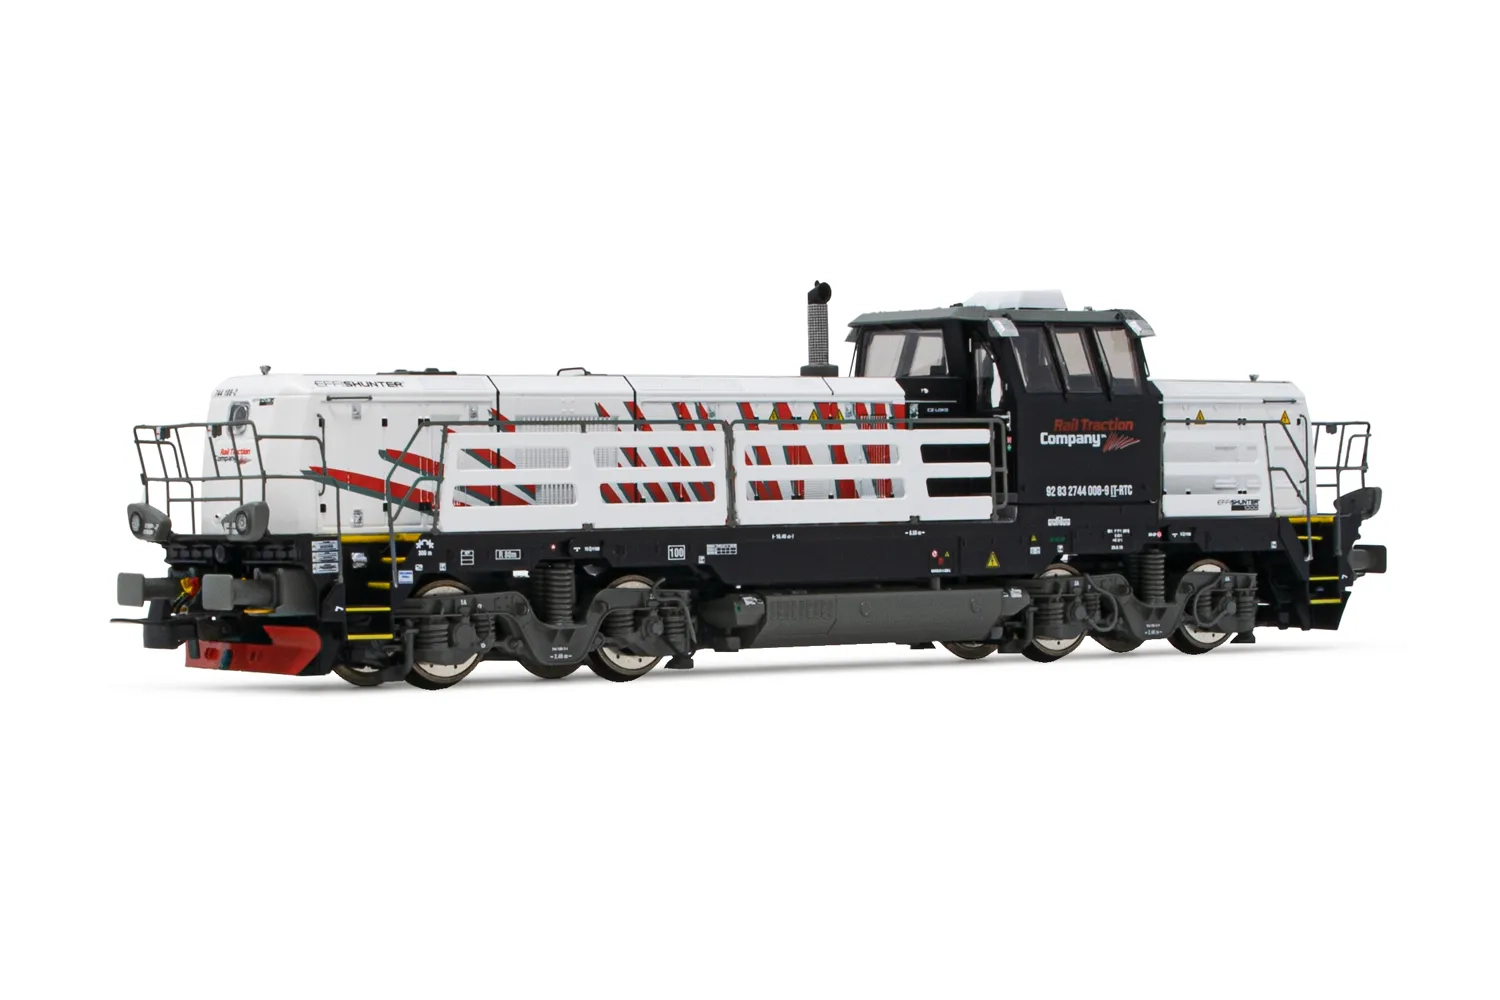 Rail Traction Company, Diesellokomotive EffiShunter 1000 in weiß/schwarzer Lackierung, Ep. VI